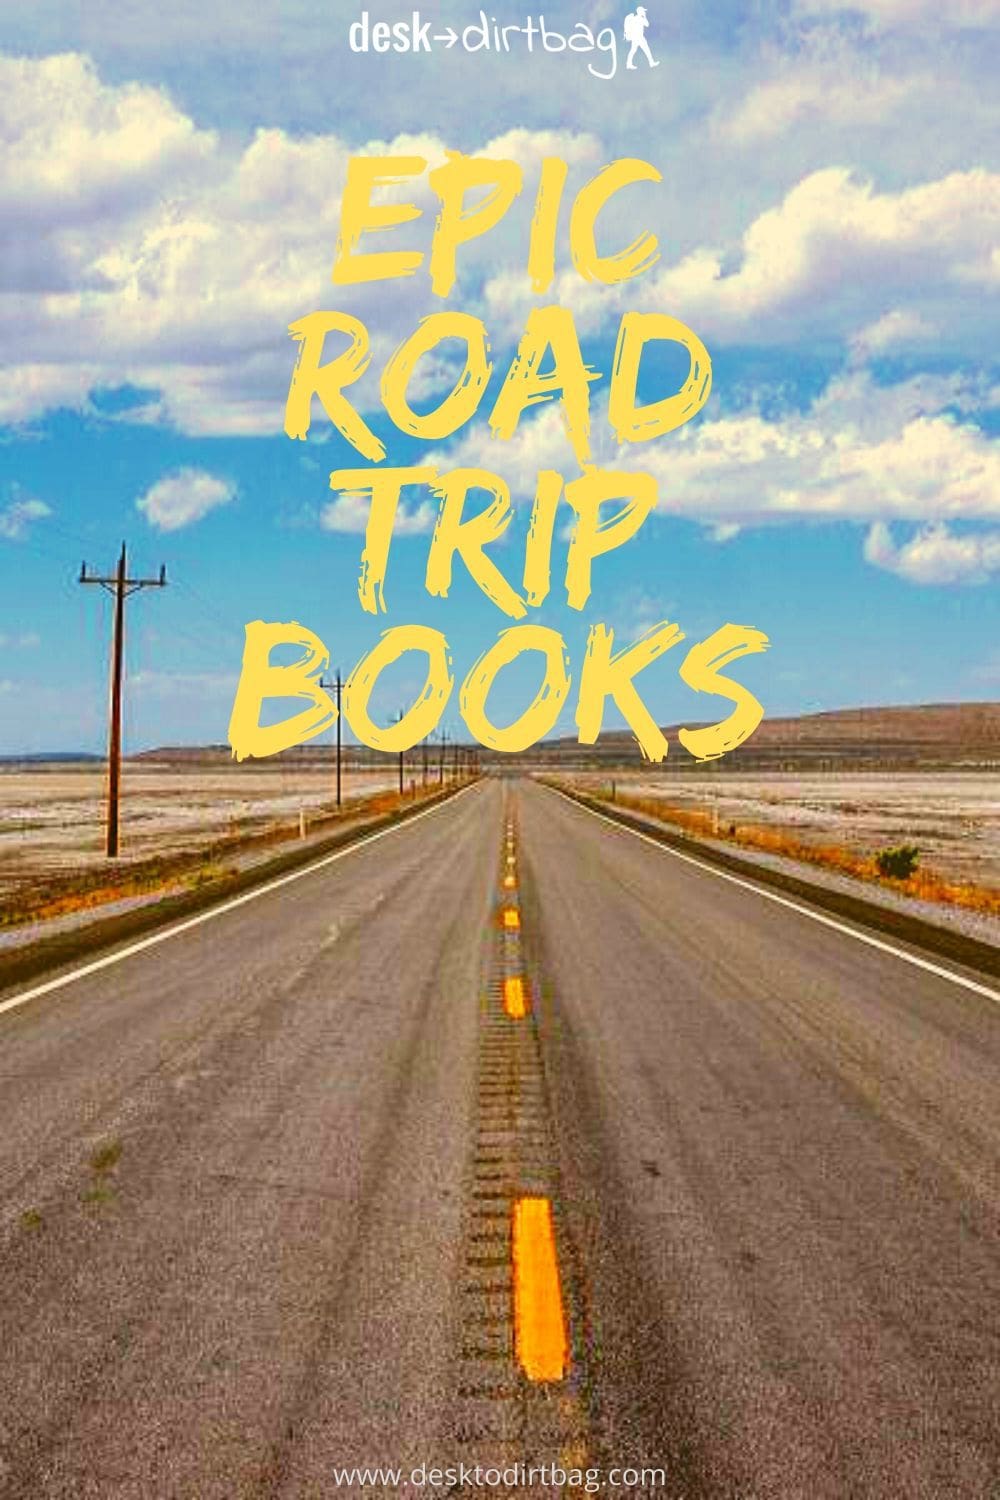 road trip thriller books